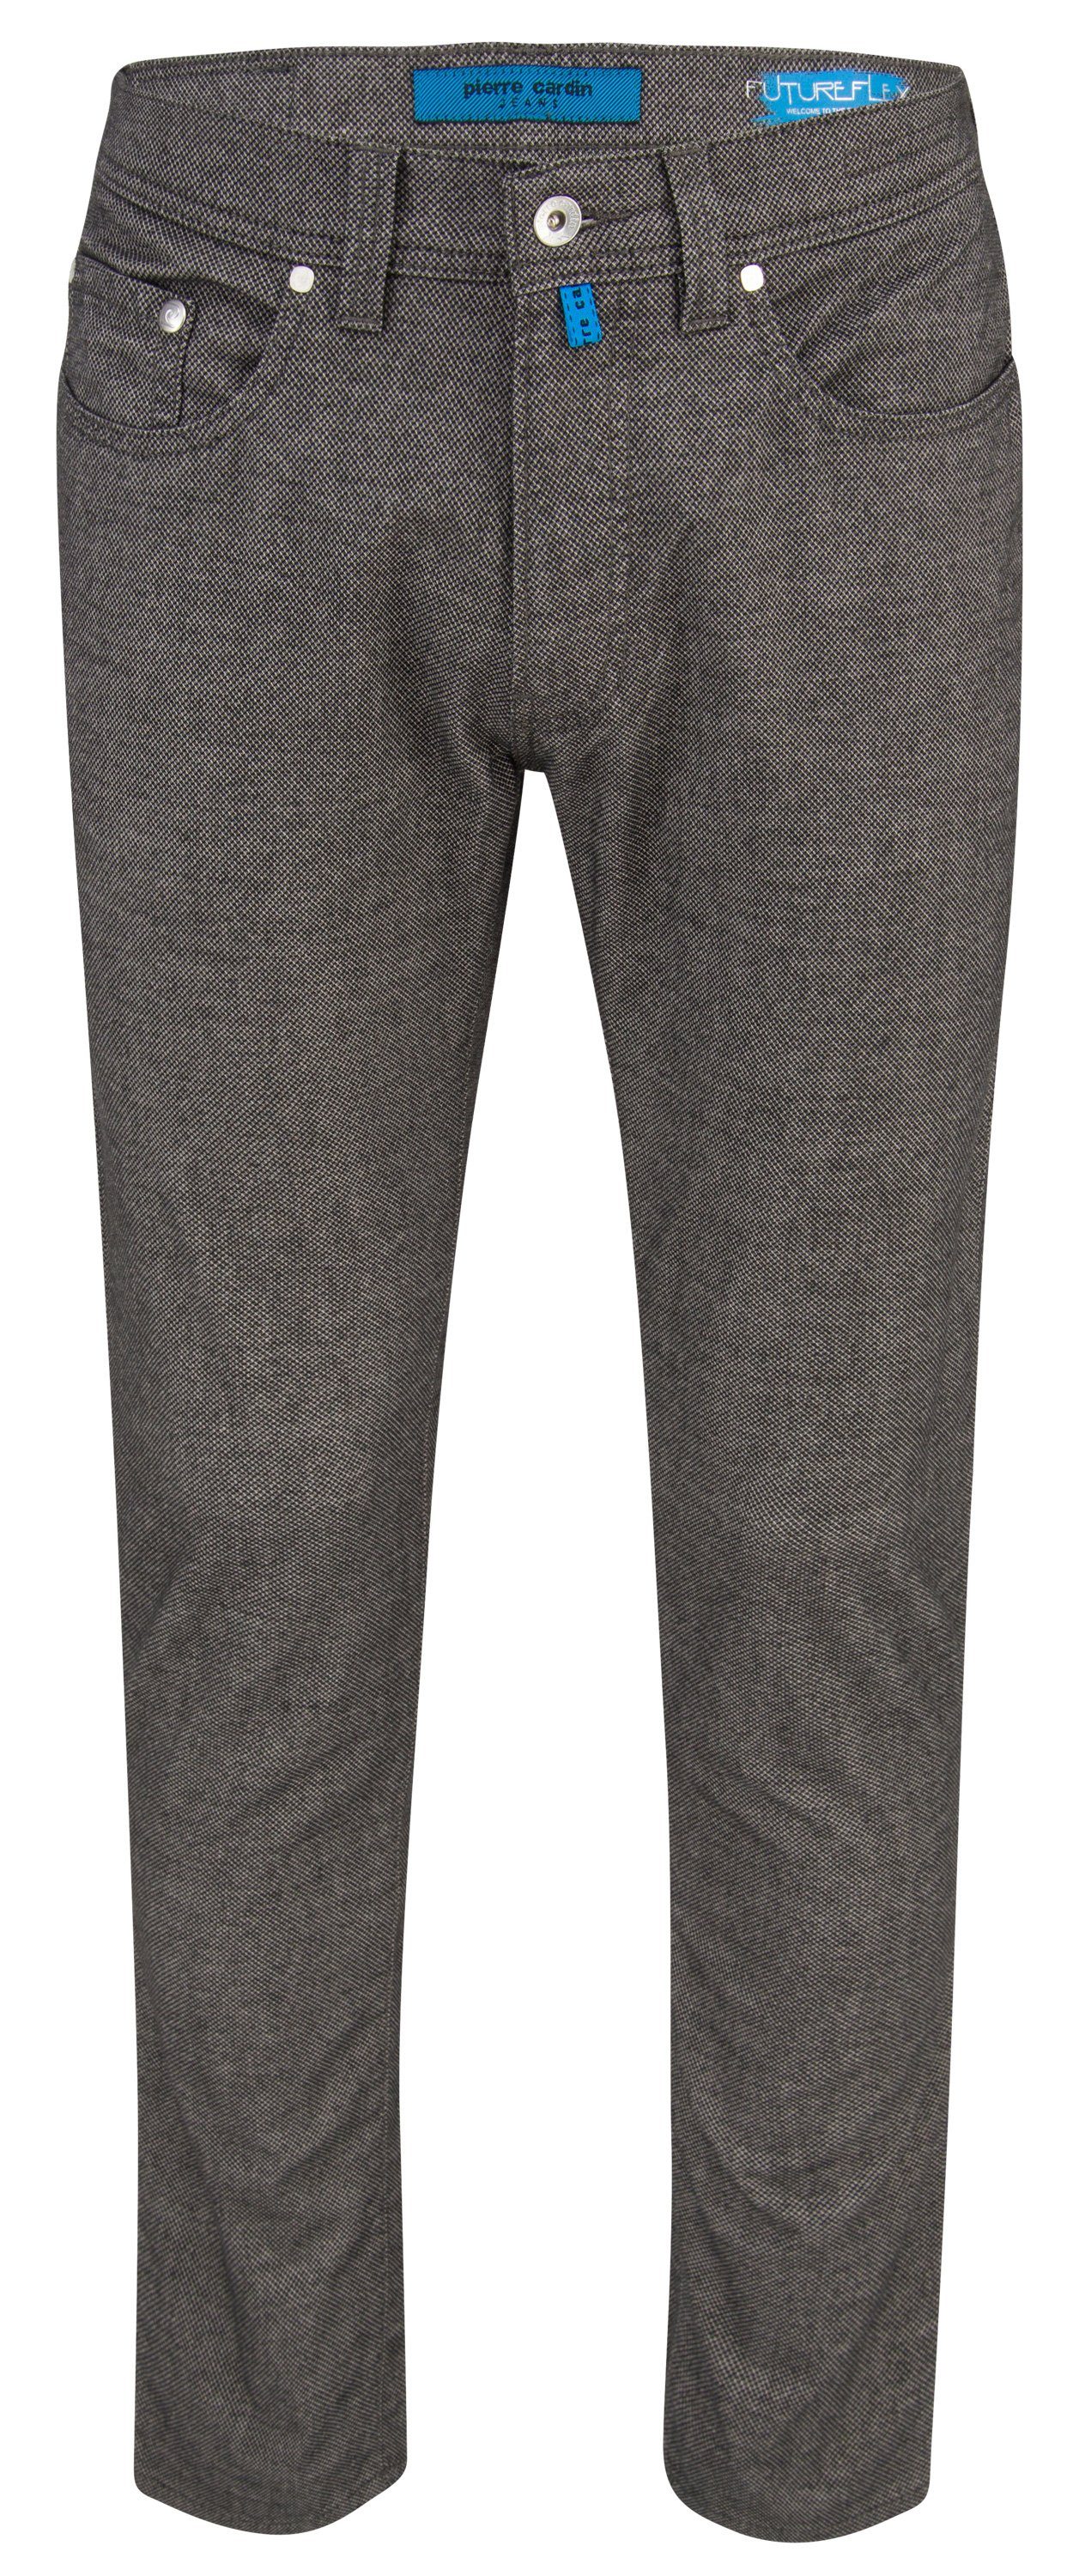 Pierre Cardin 5-Pocket-Jeans PIERRE CARDIN FUTUREFLEX LYON grey structured 3451 4790.82